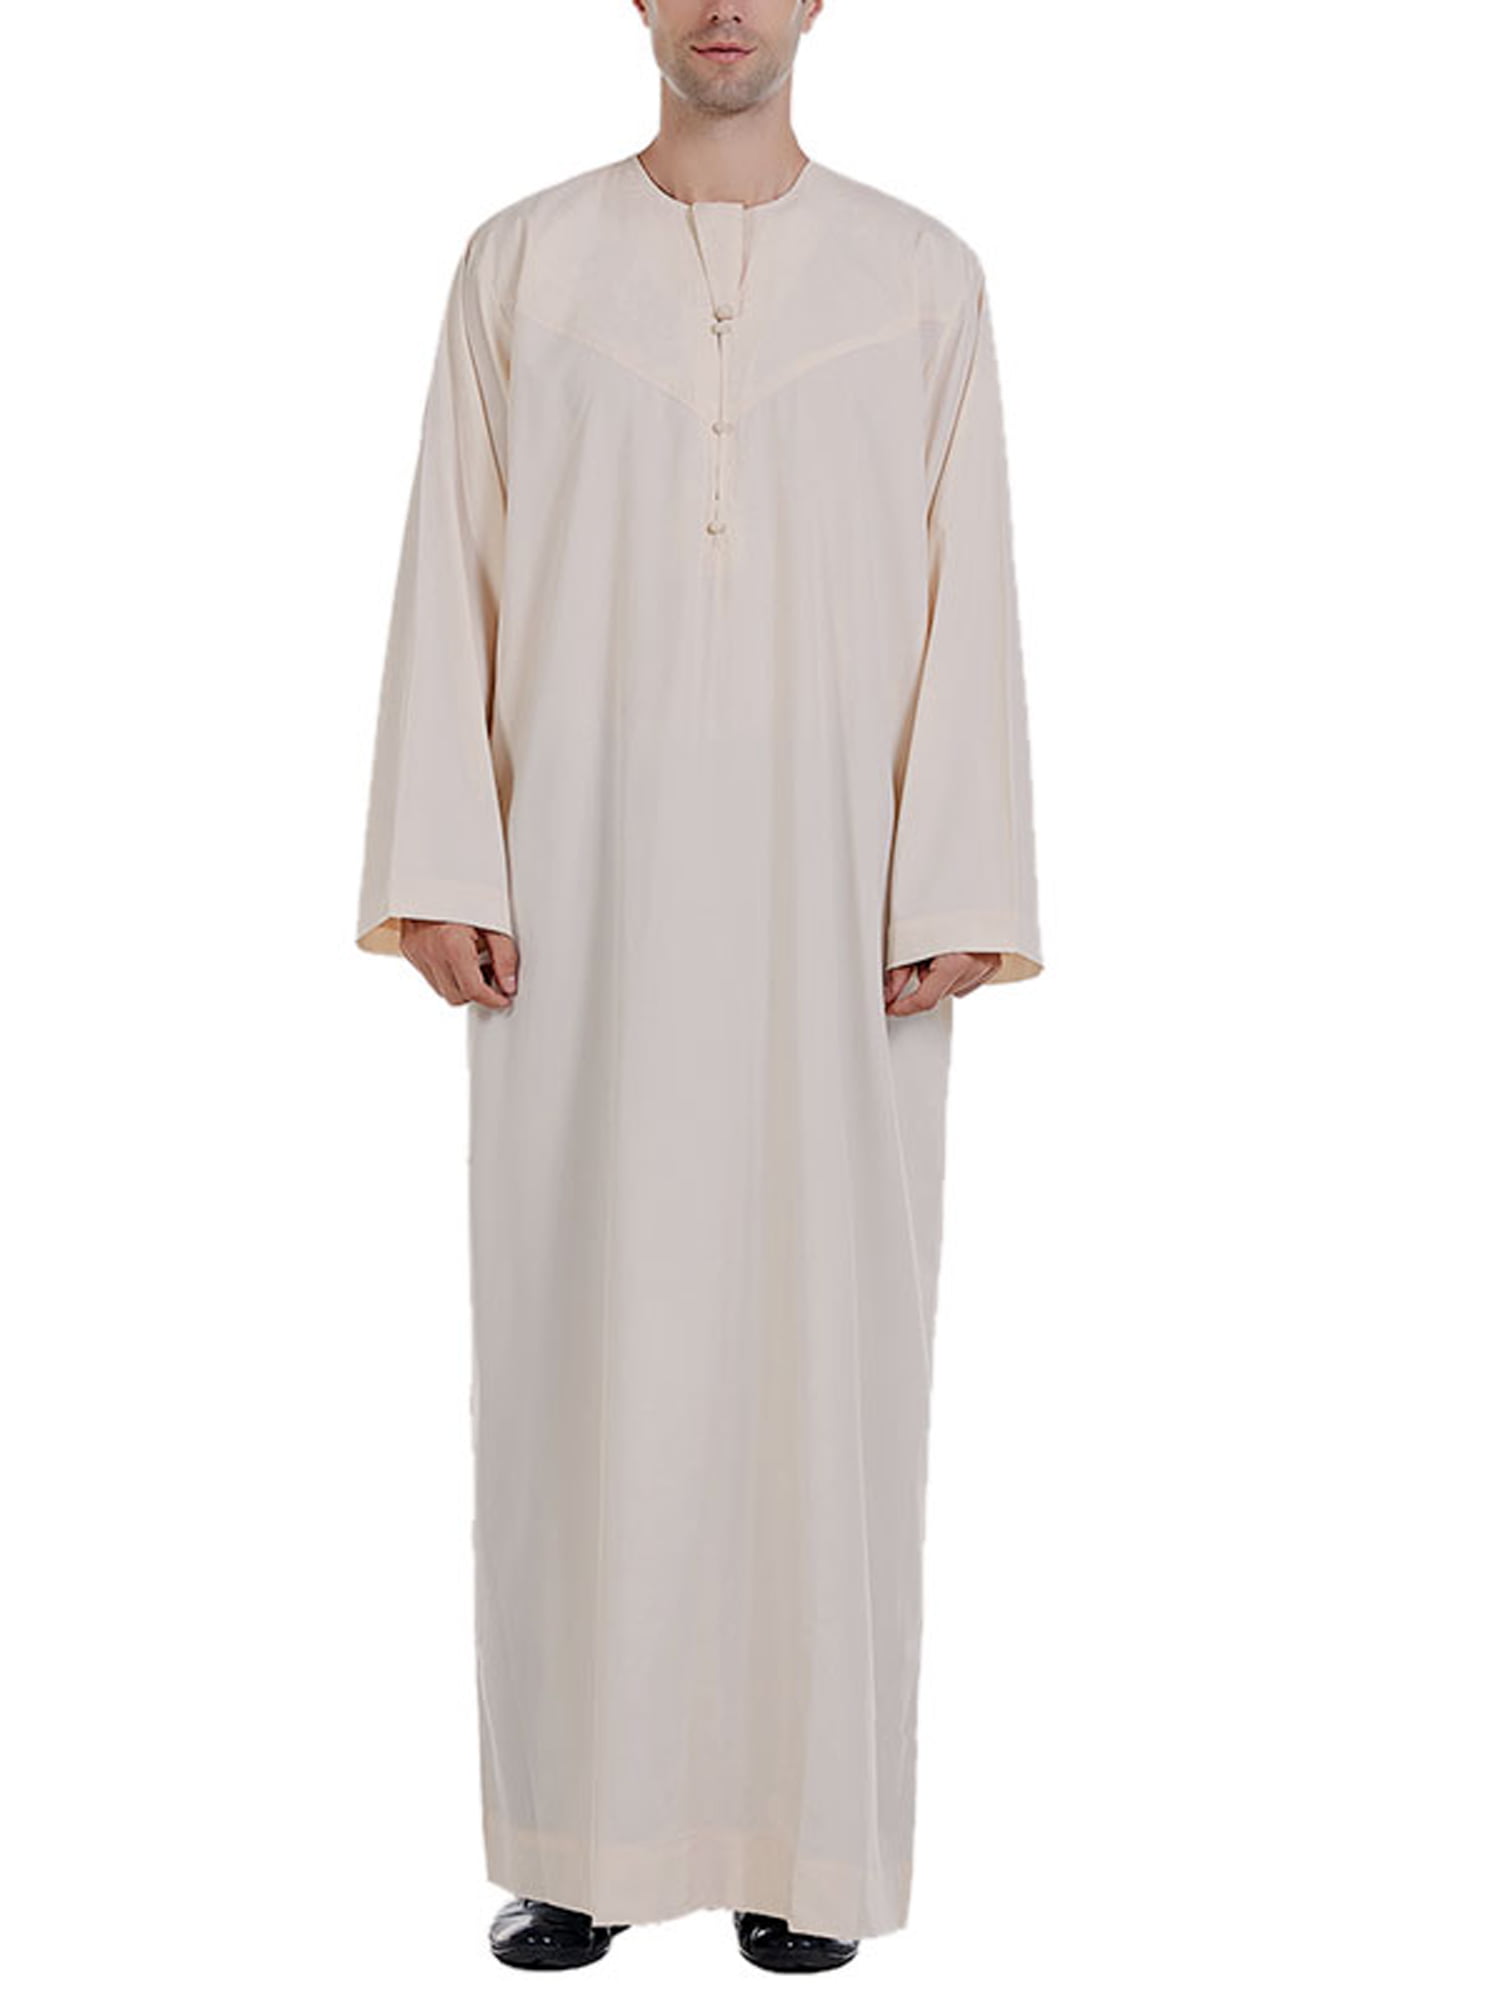 Muslim Men's Saudi Arab Jubba Long Sleeve Dress Tunic Thobe Islamic Kaftan Tops 